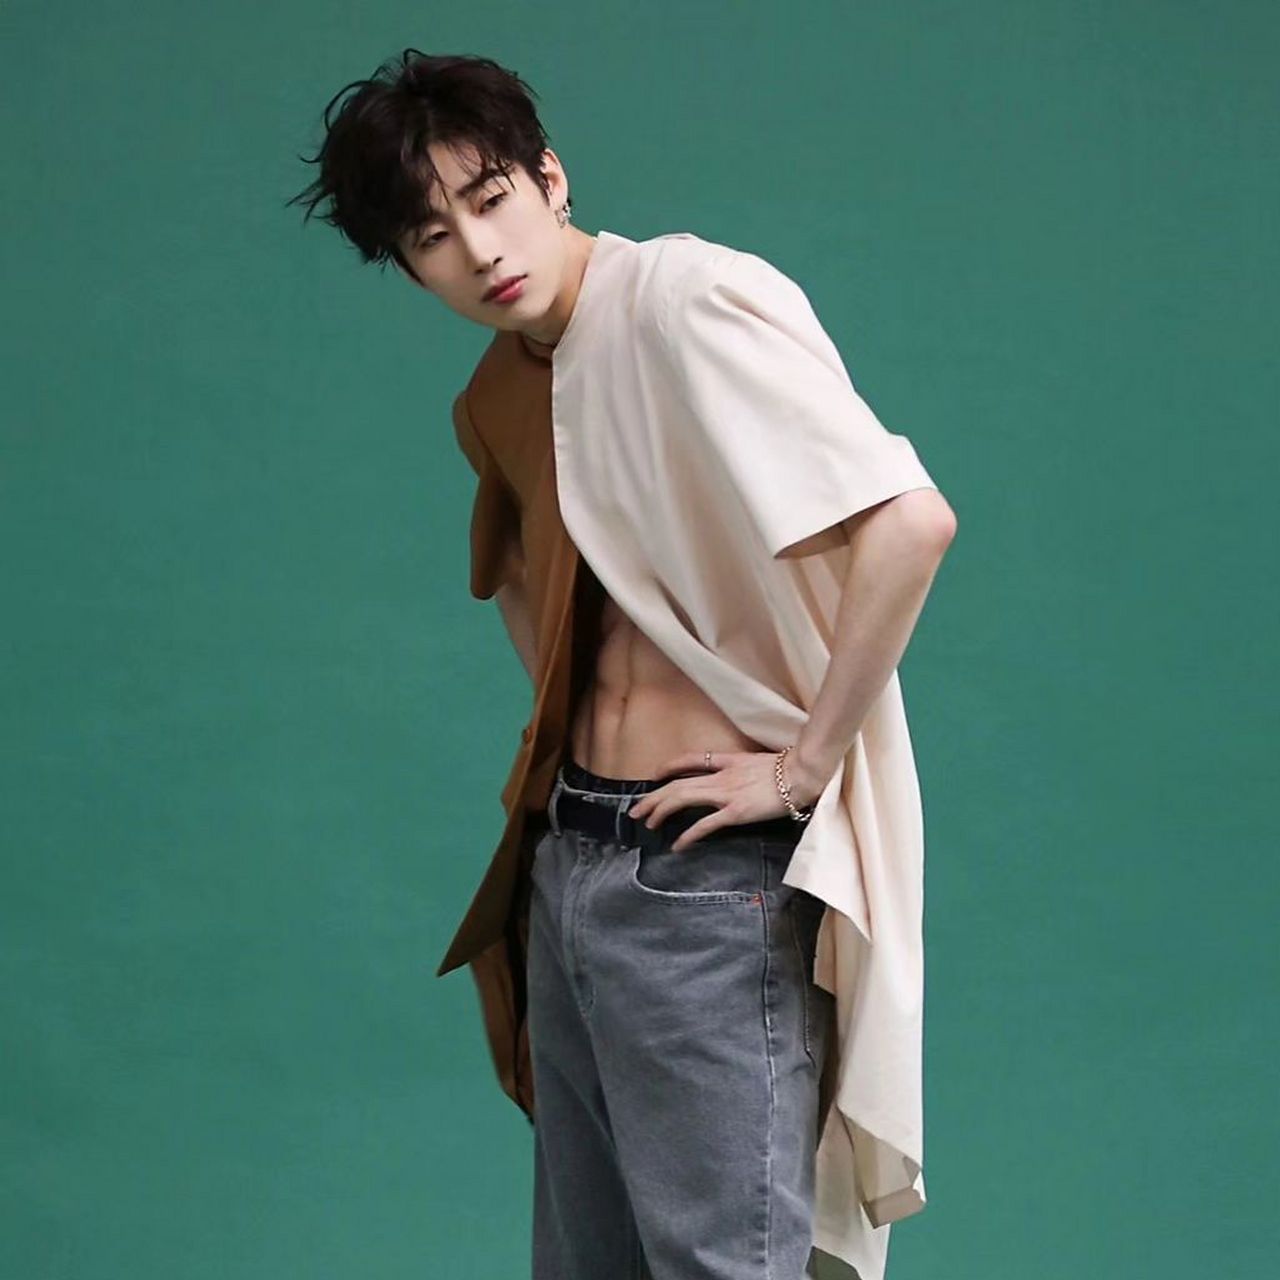 韩国男团victon成员韩胜宇,拍杂志半露腹肌,满屏洋溢着青春的气息